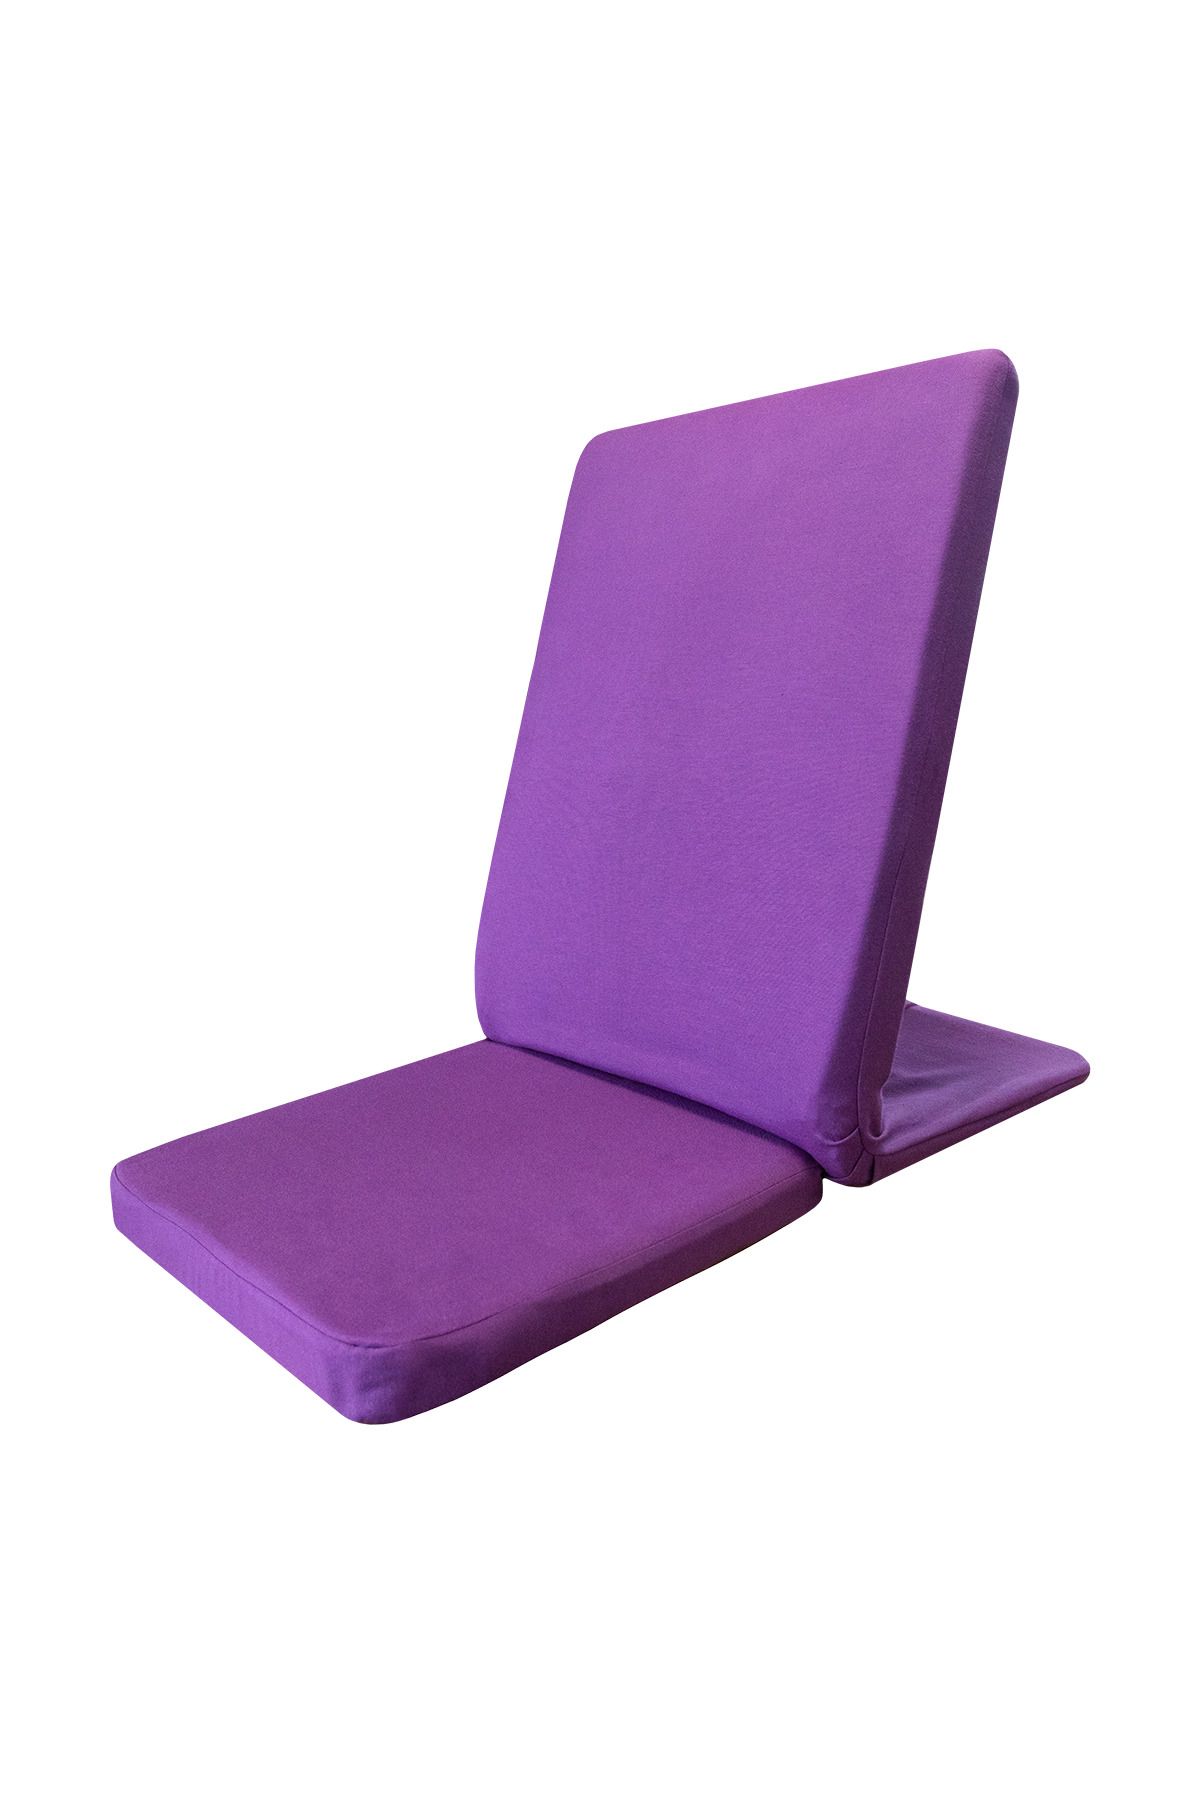 Yogabu Mor Backjack Sırtı Demirli Meditasyon Sandalyesi